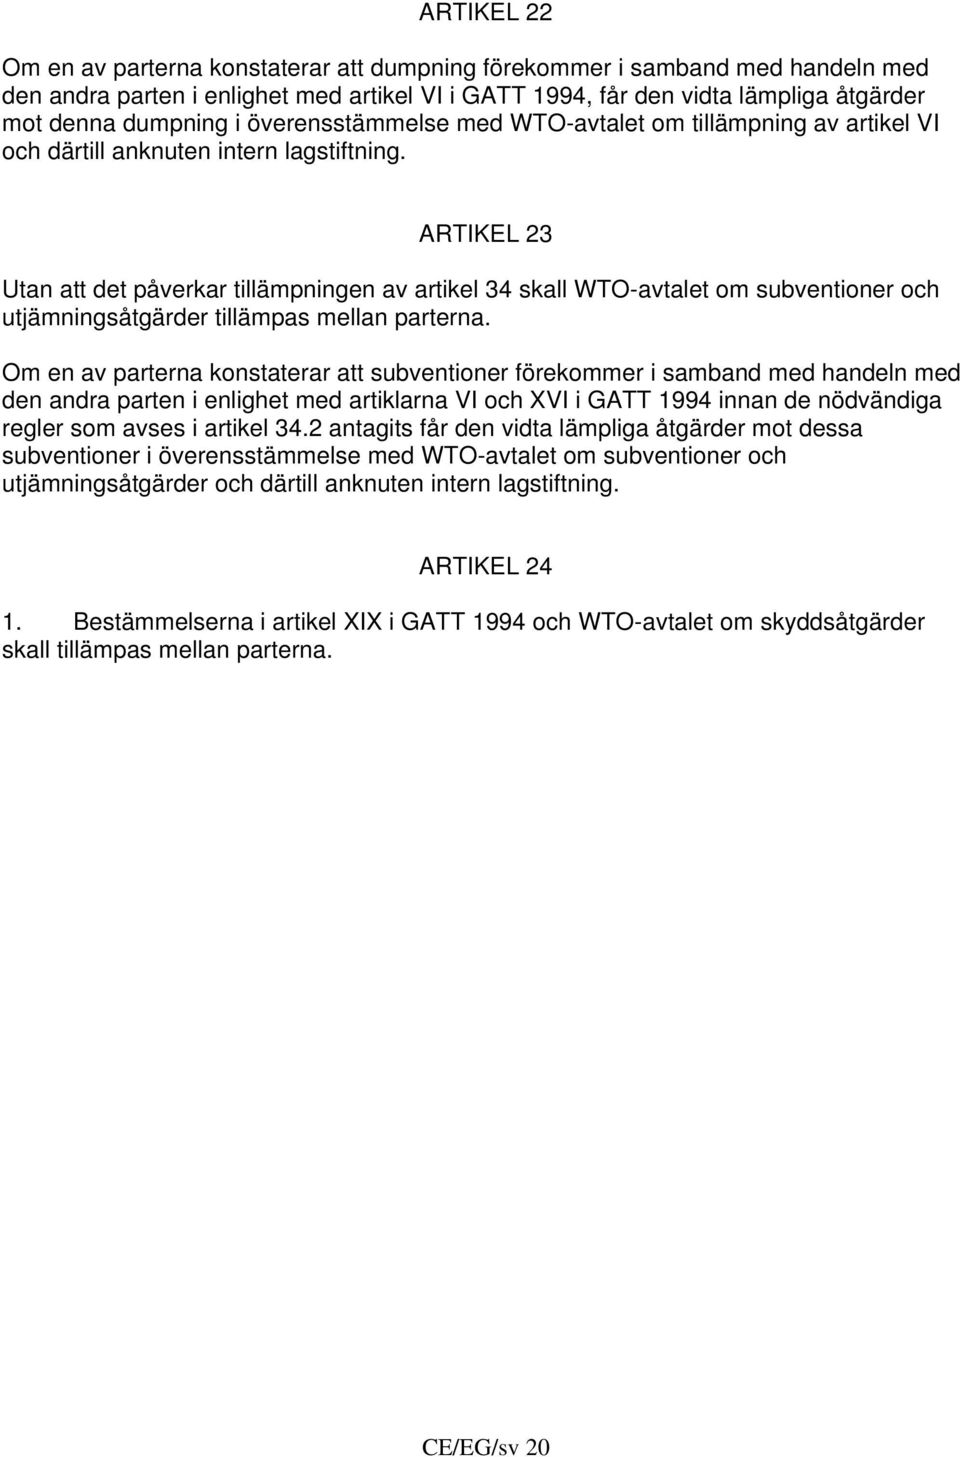 ARTIKEL 23 Utan att det påverkar tillämpningen av artikel 34 skall WTO-avtalet om subventioner och utjämningsåtgärder tillämpas mellan parterna.